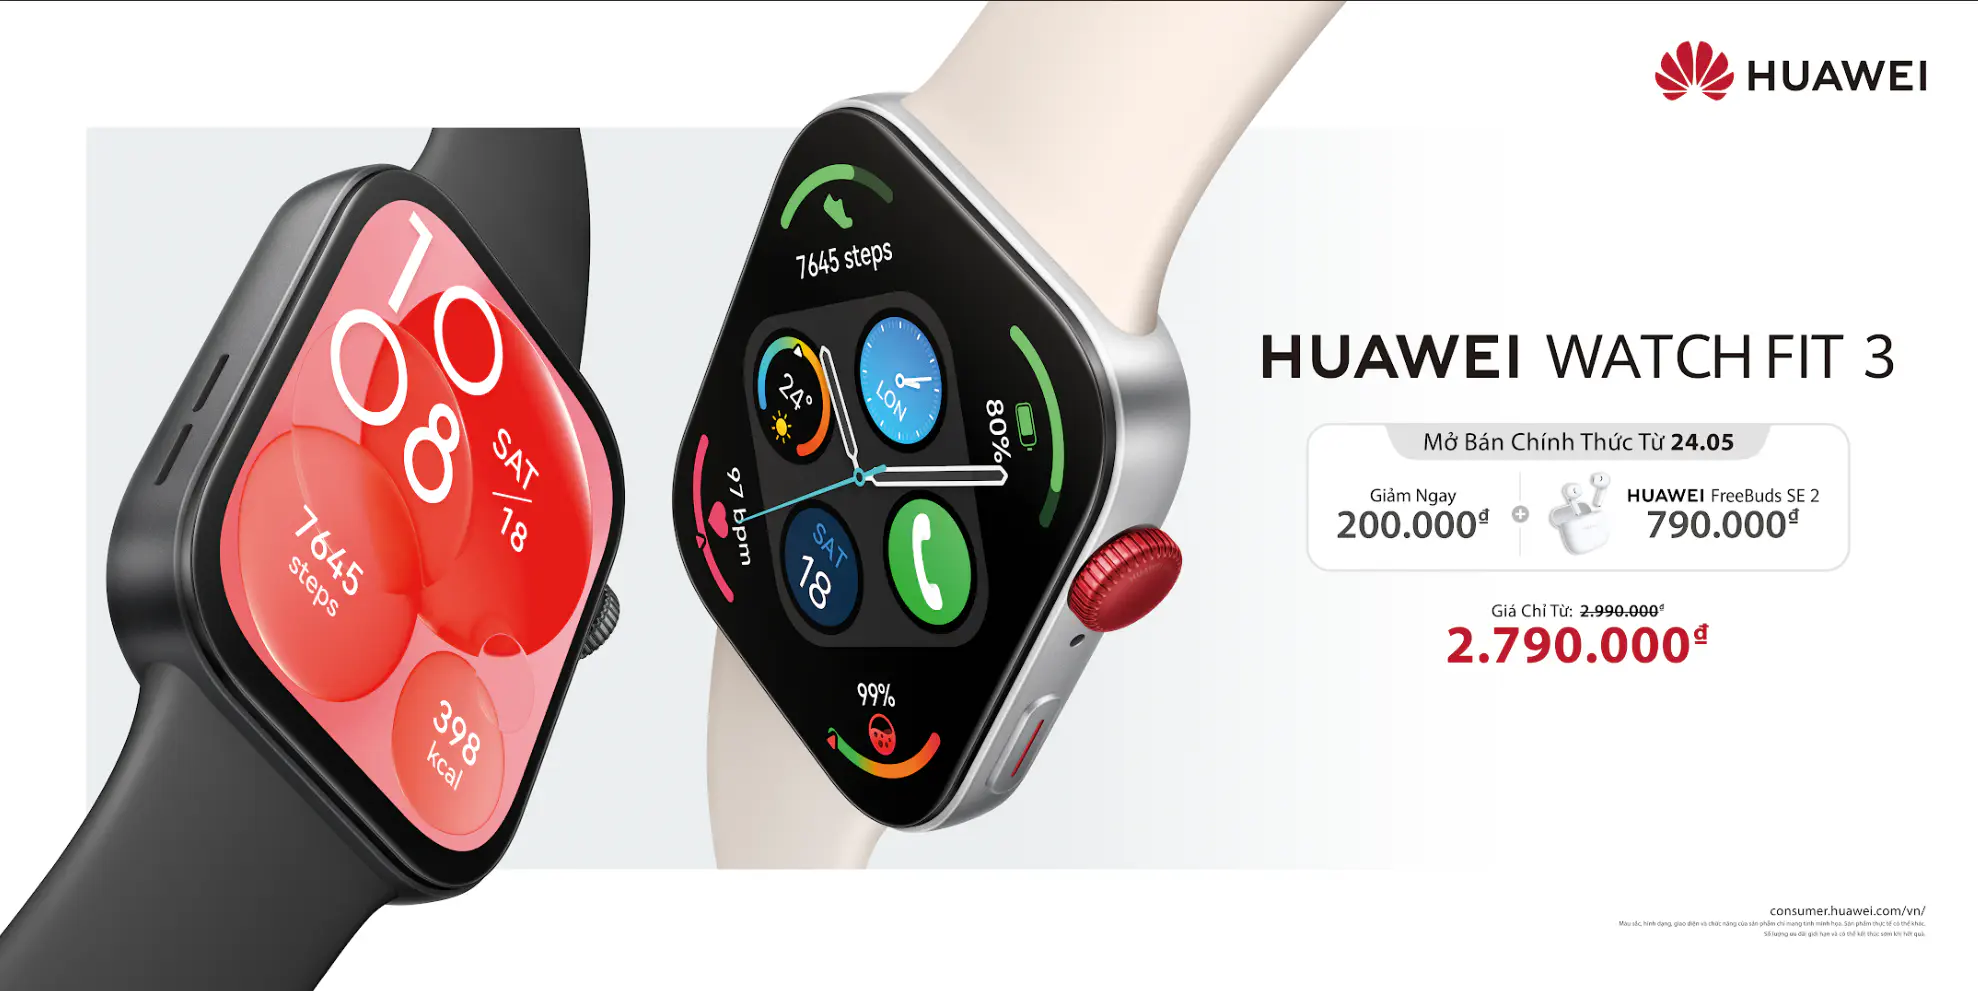 Huawei mở bán chính thức HUAWEI WATCH FIT 3